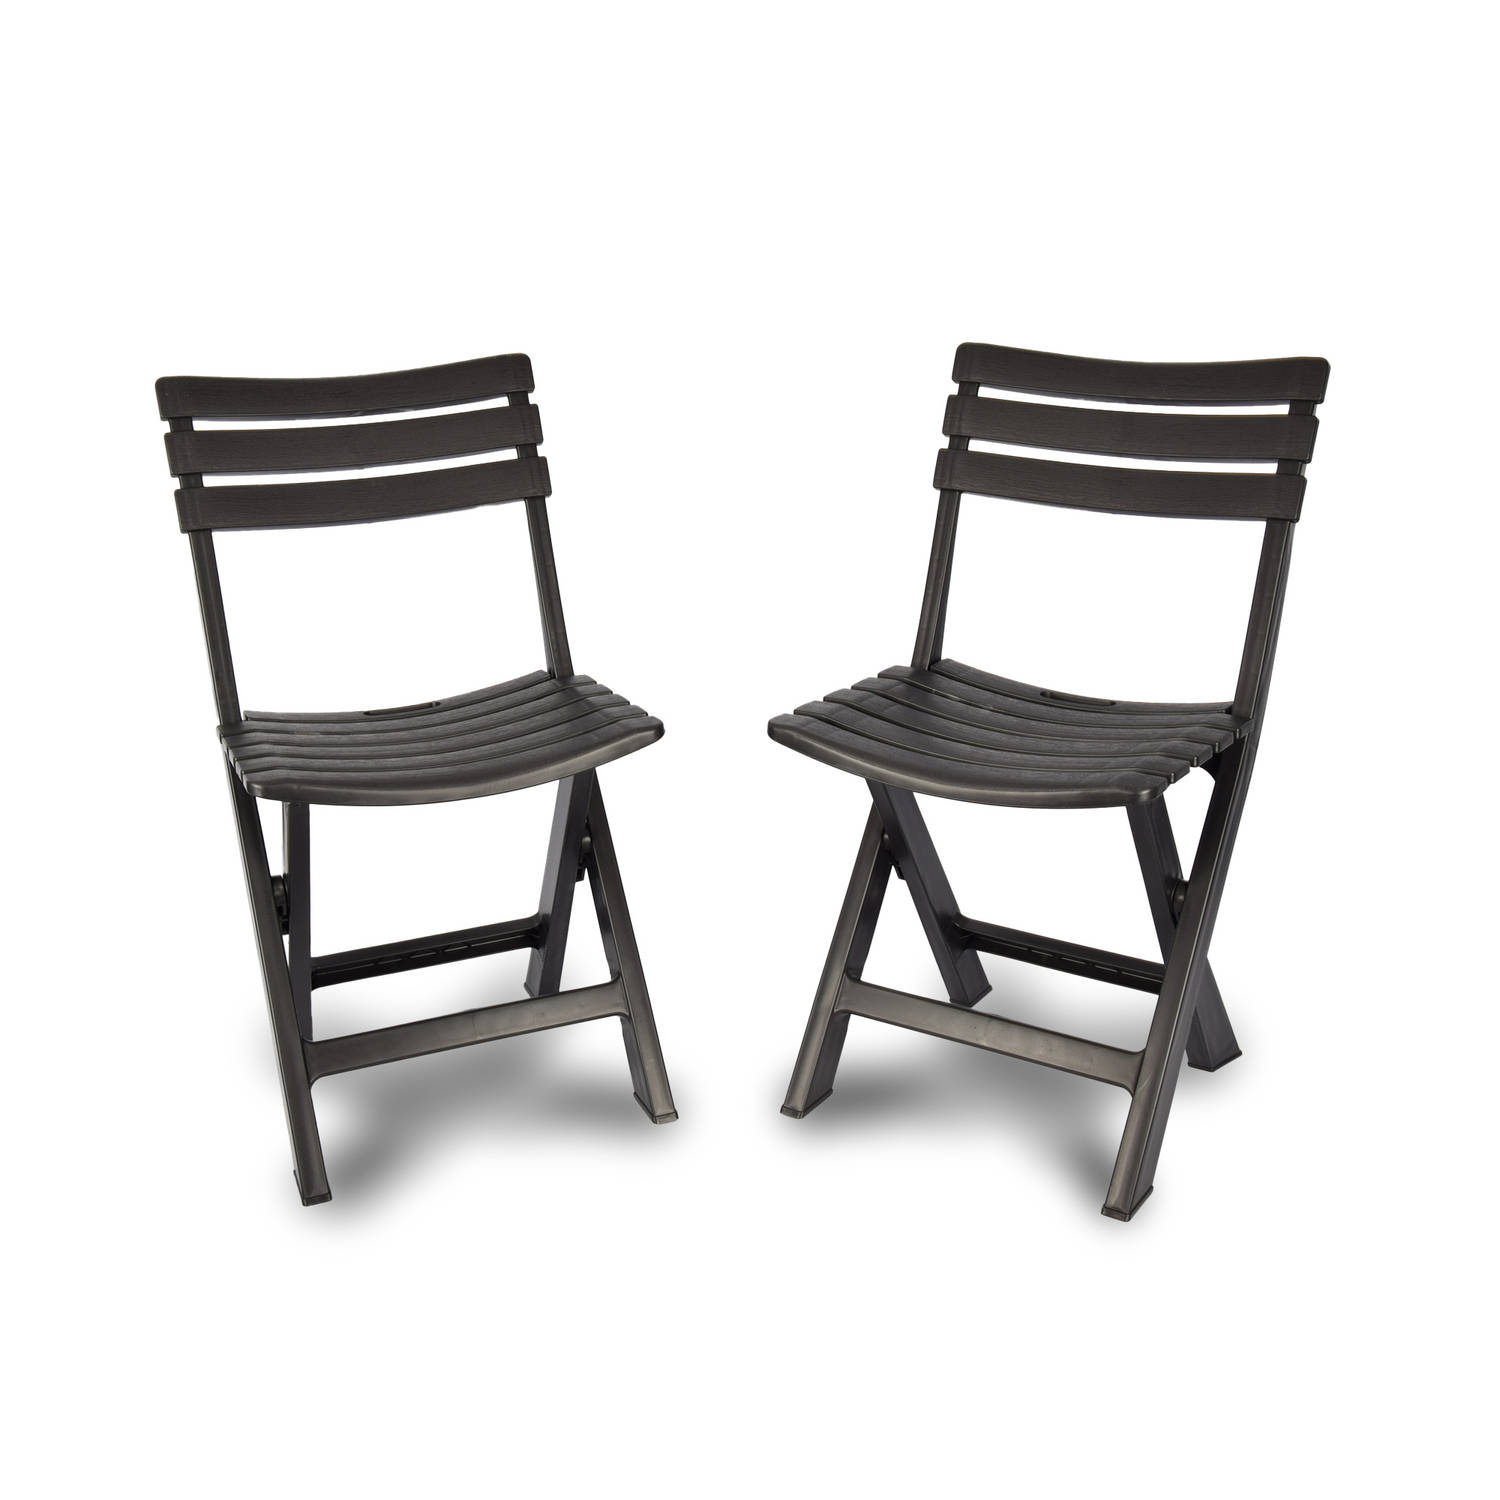 Klapstoelen Voor Binnen En Buiten In De Kleur Zwart Klapstoel Zwart Hout Houten Klapstoelen 2 Stuks